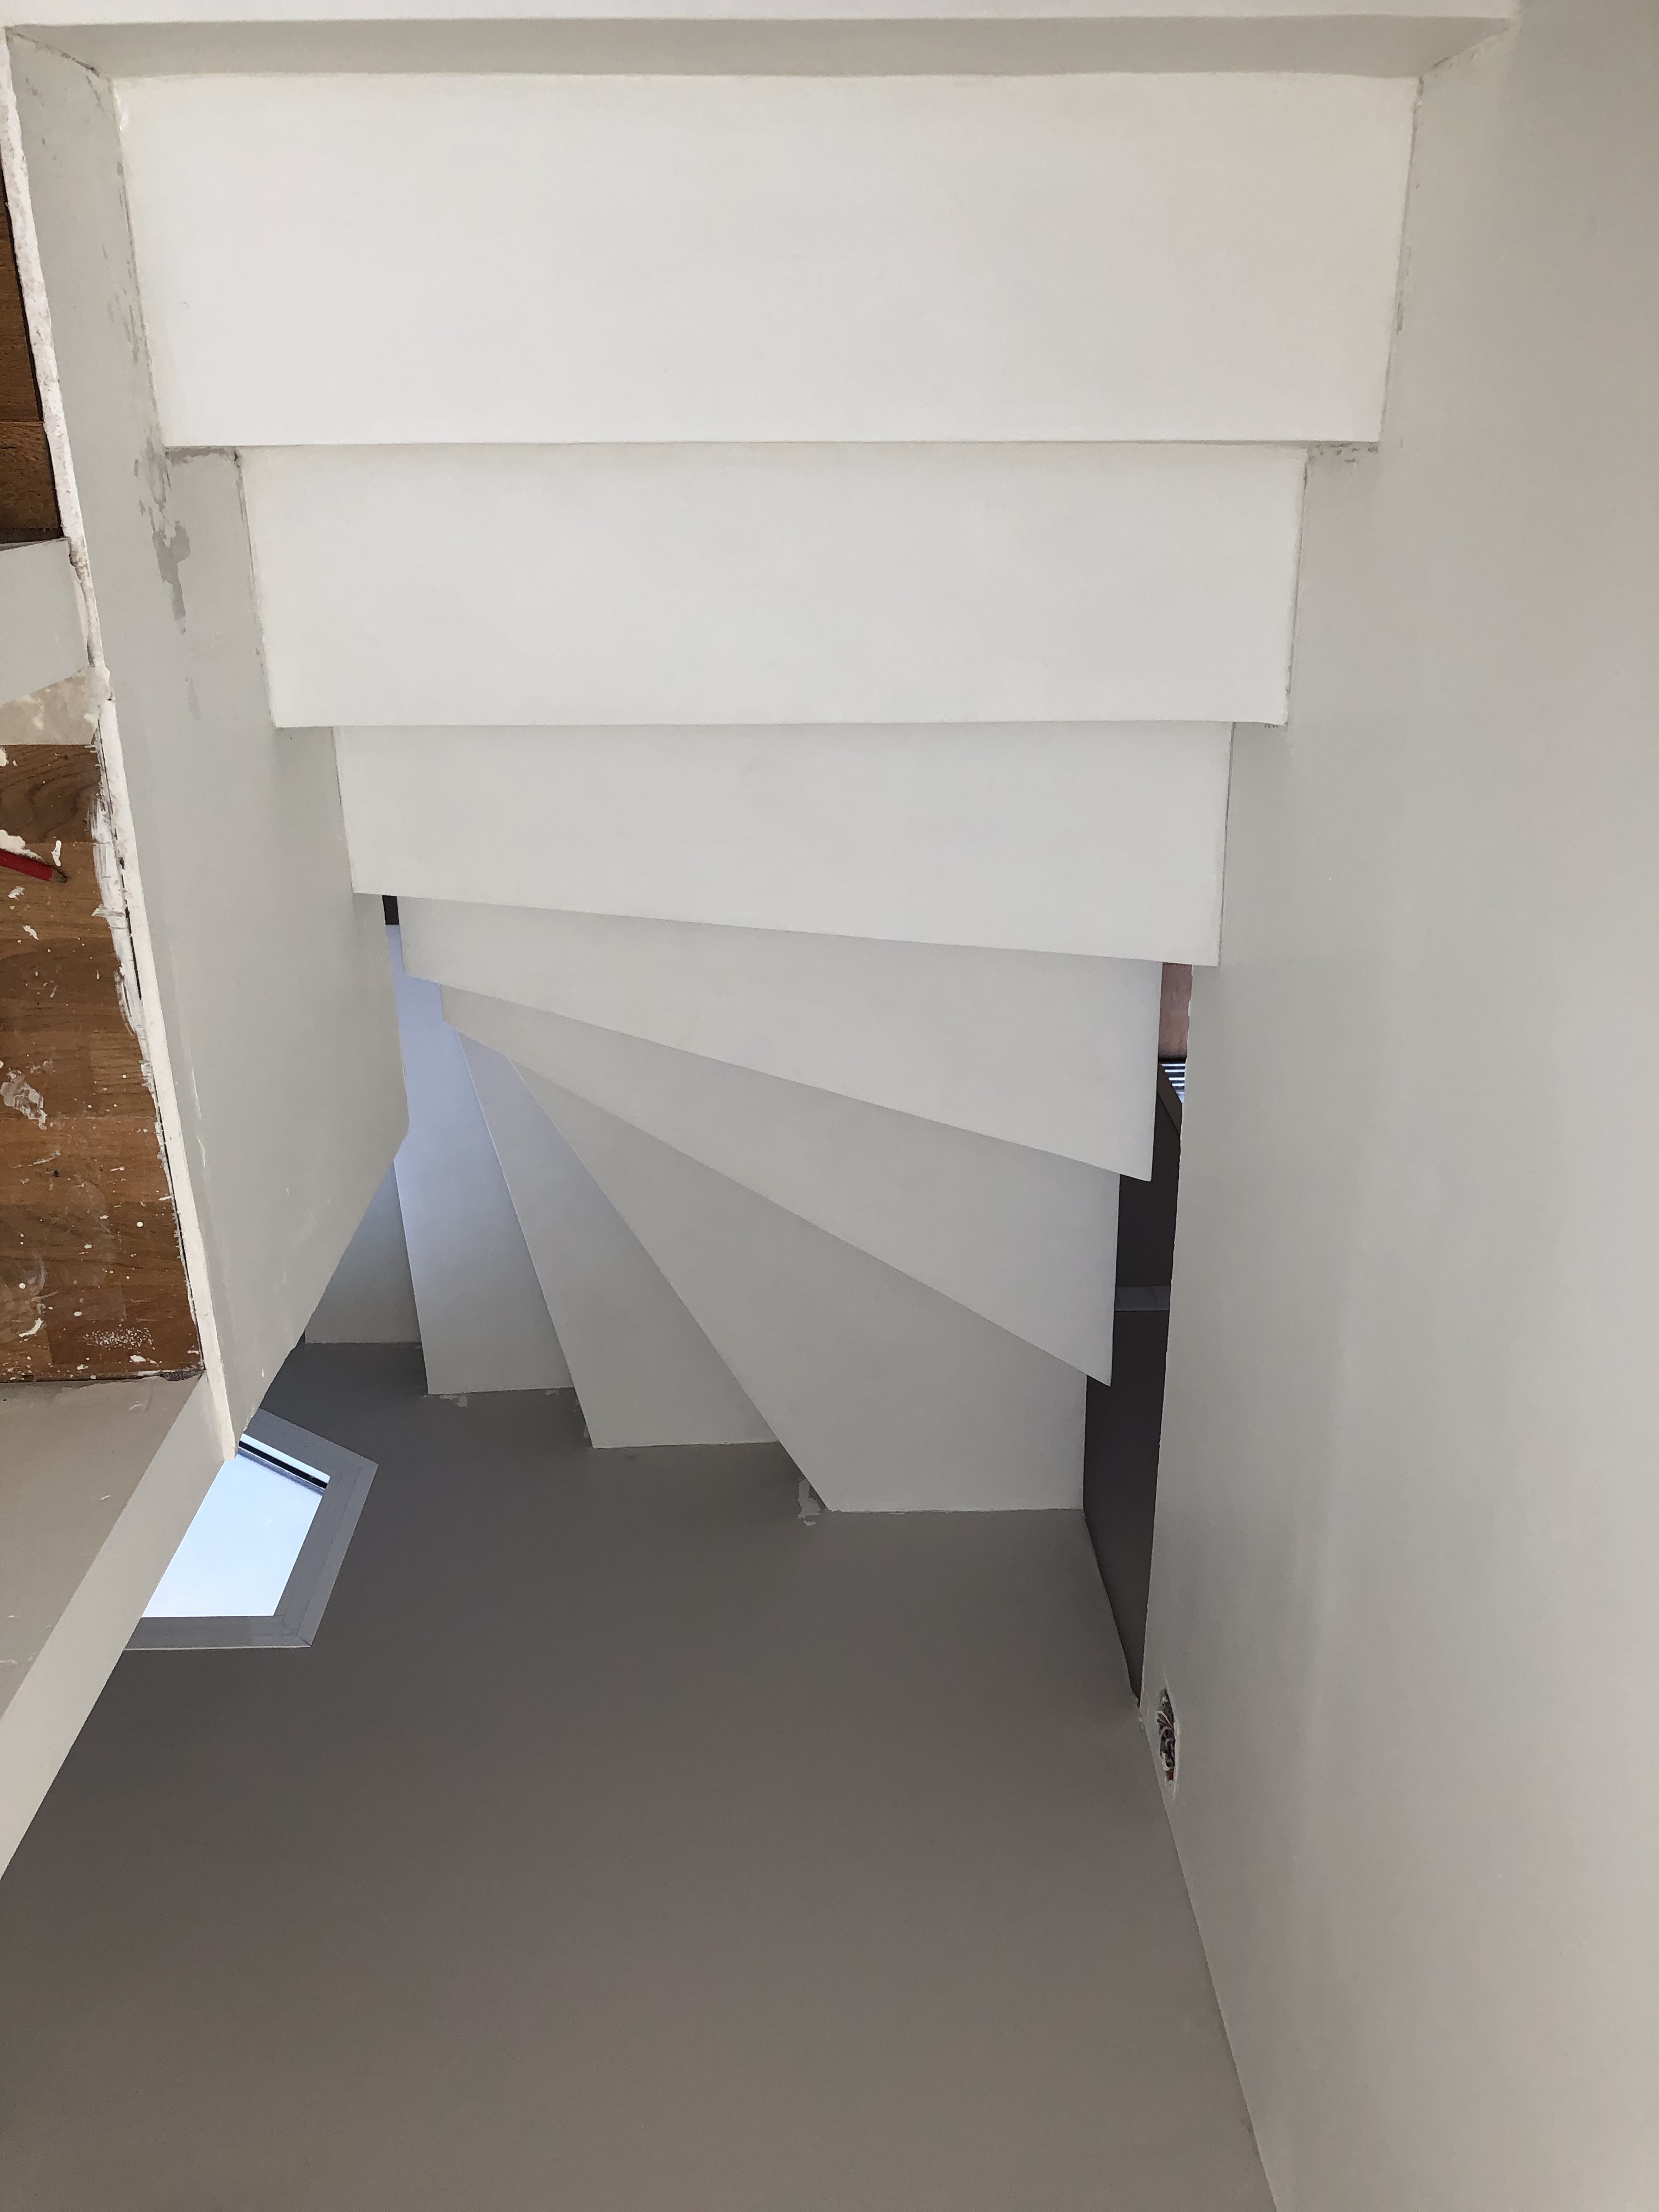 superbe escalier à paillasse balancées en béton ciré De couleur blanc pur, à VIllenave d ornon pour un particulier